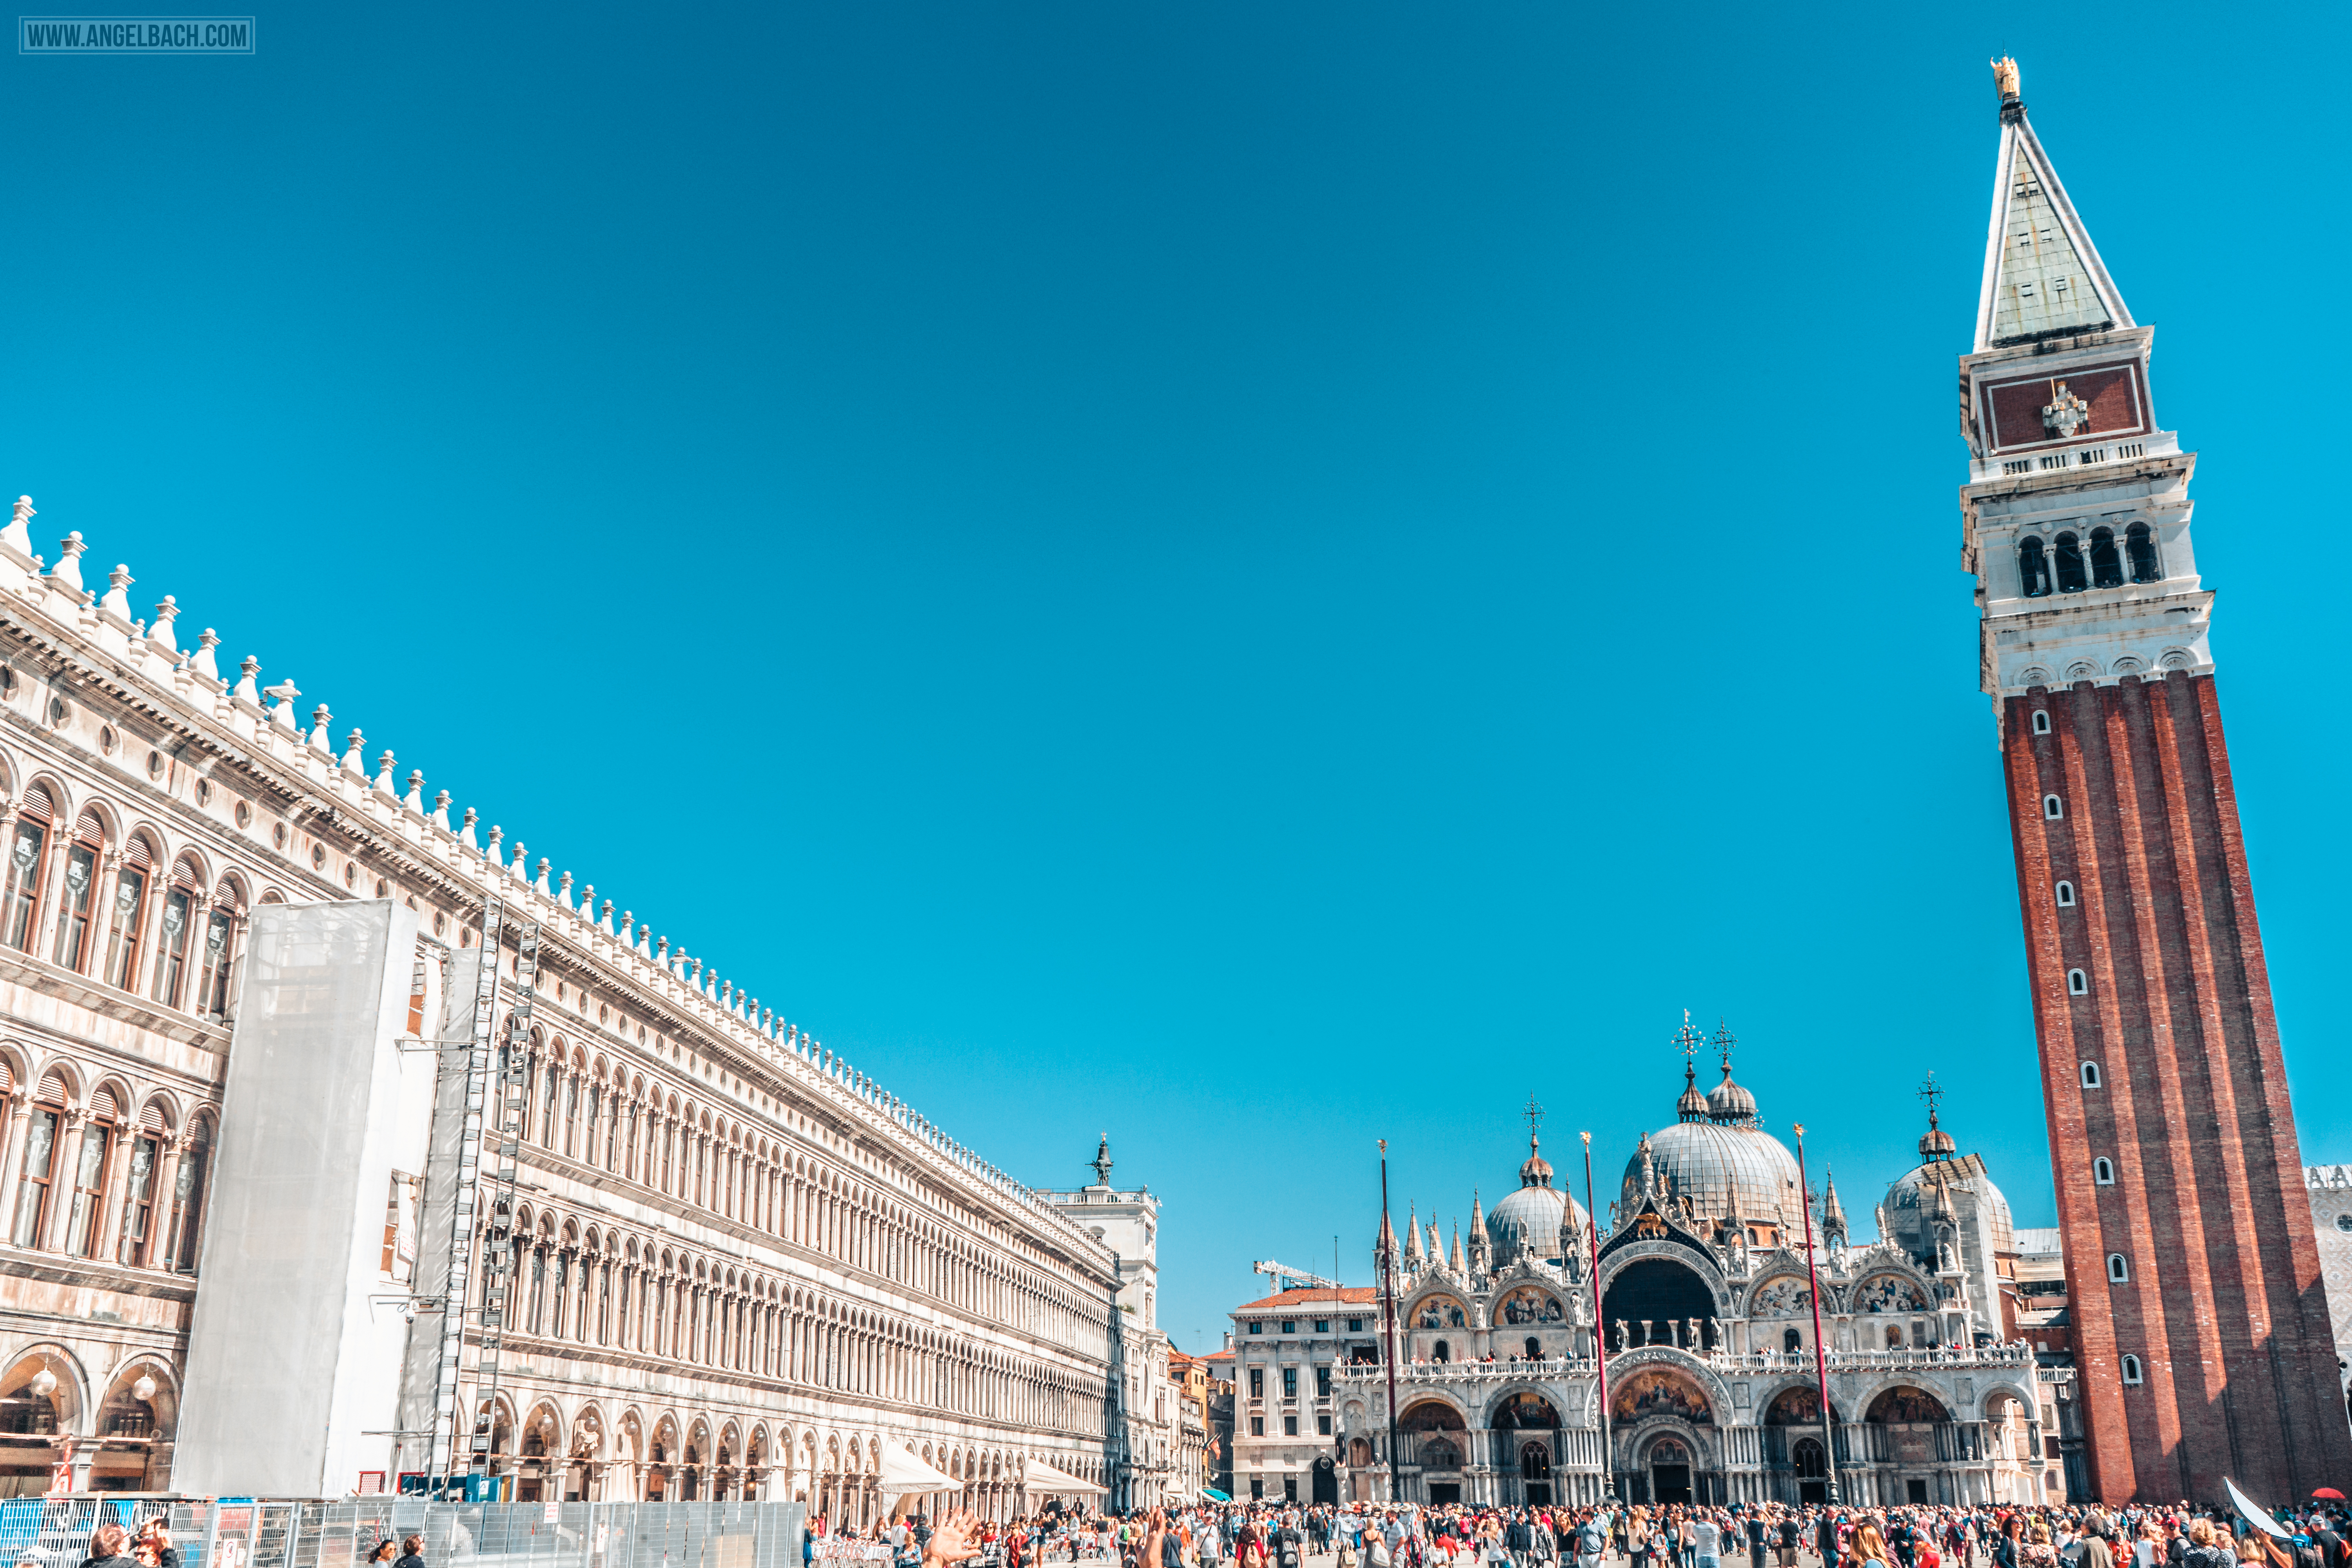 Venice Architecture, Grand Canal, Sailing, boats, gandola ride, Adriatic Sea, Venice Lagoon, Renaissance, Gothic, Vintage Venice, Venezia, Italy, Piazza San Marco